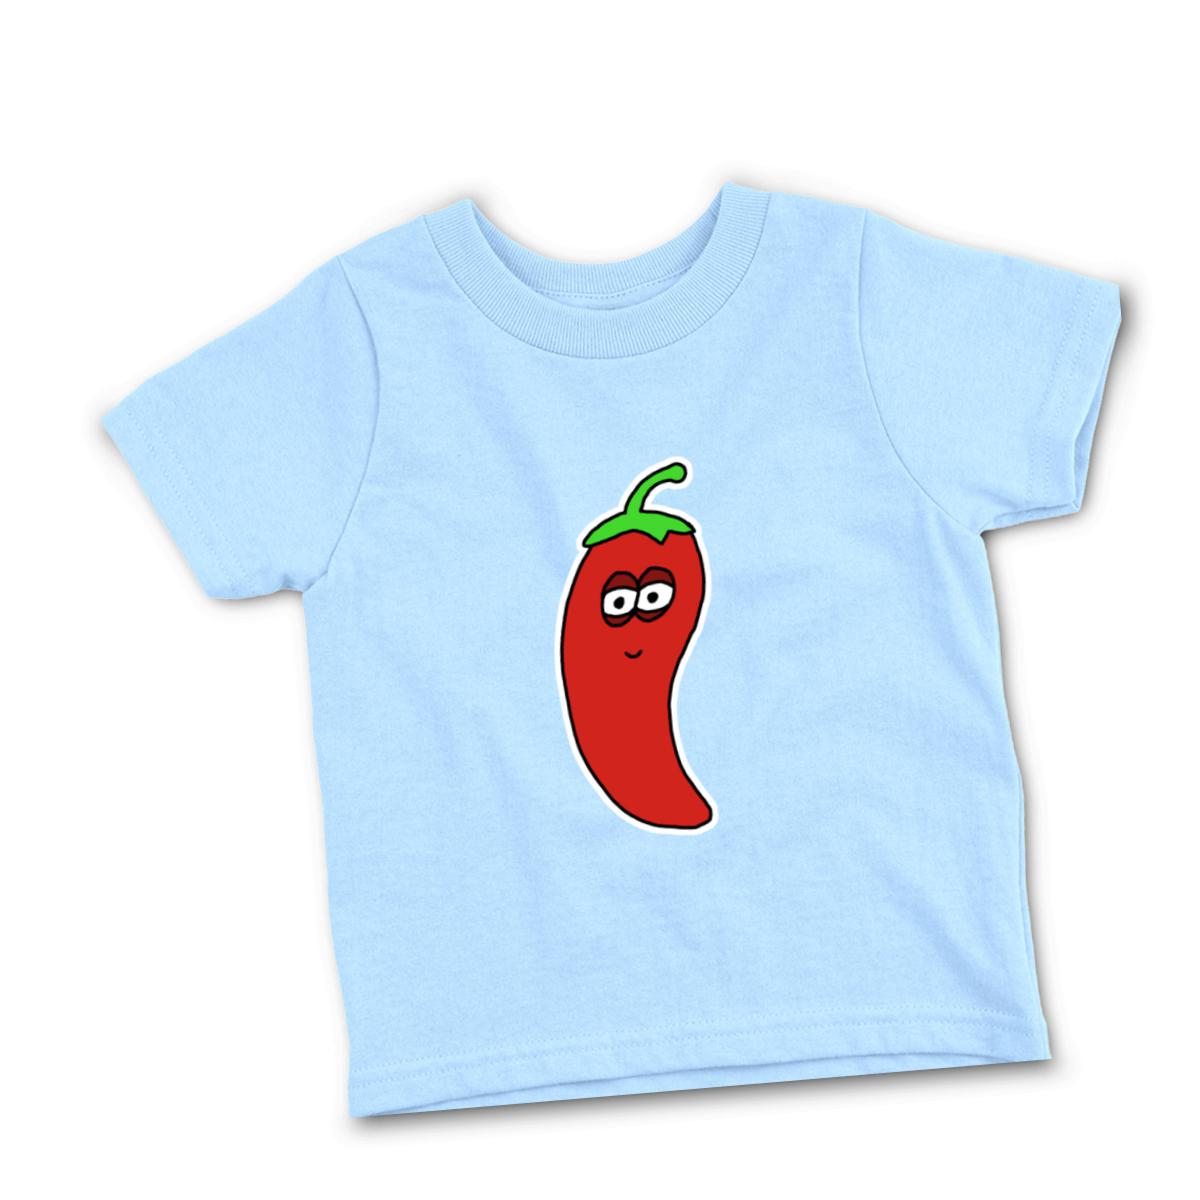 Chili Pepper Toddler Tee 56T light-blue